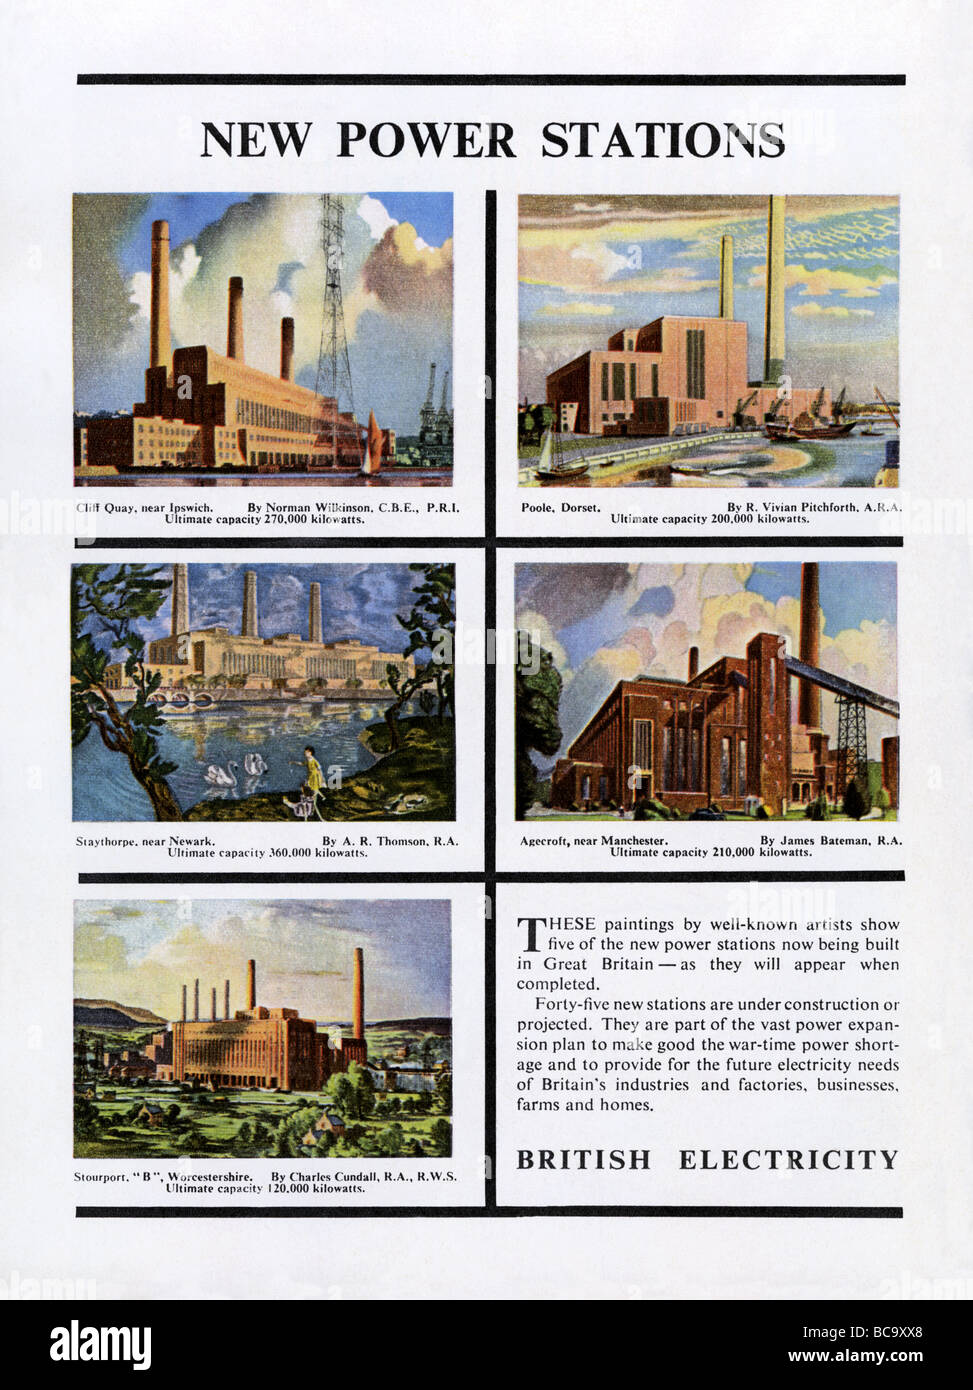 1951 Advertment für britische Strom zeigt neue Kohlekraftwerke in Poole, Staythorpe, Agecroft, Ipswich, Stourport Stockfoto